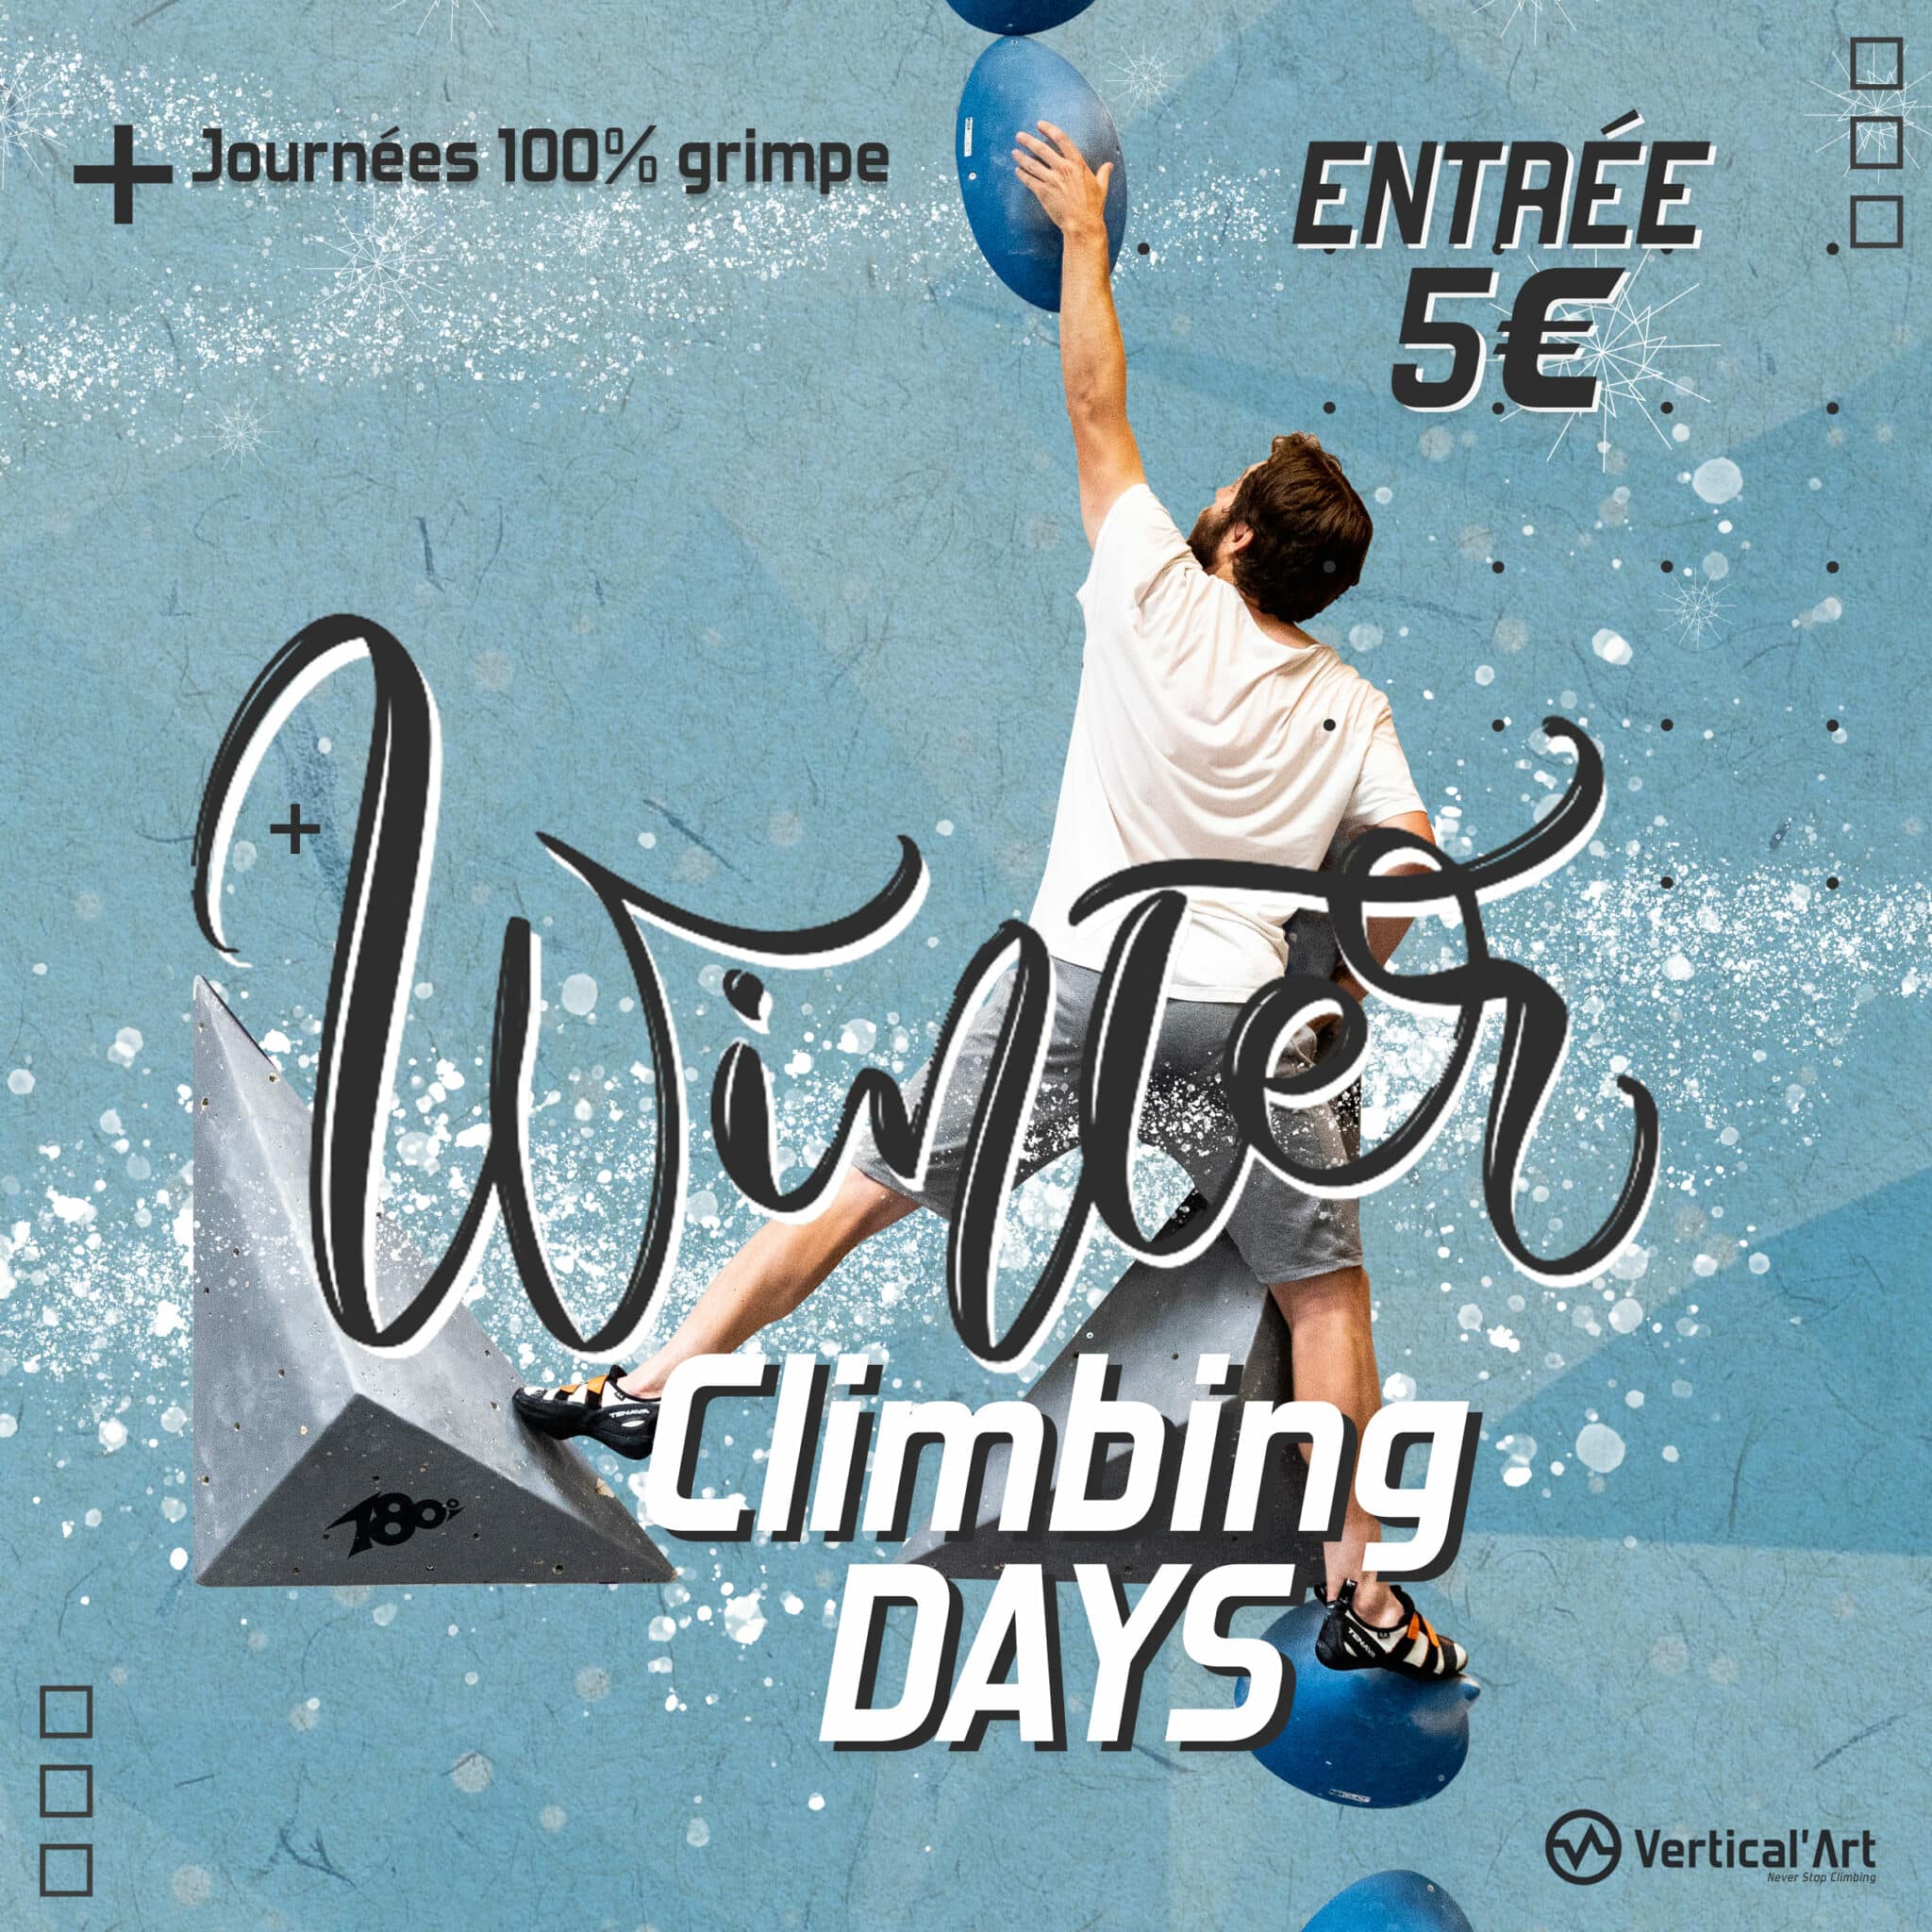 Winter Climbing Days à Vertical’Art Orléans, escalade à 5€ pour tous pendant les vacances d'hiver